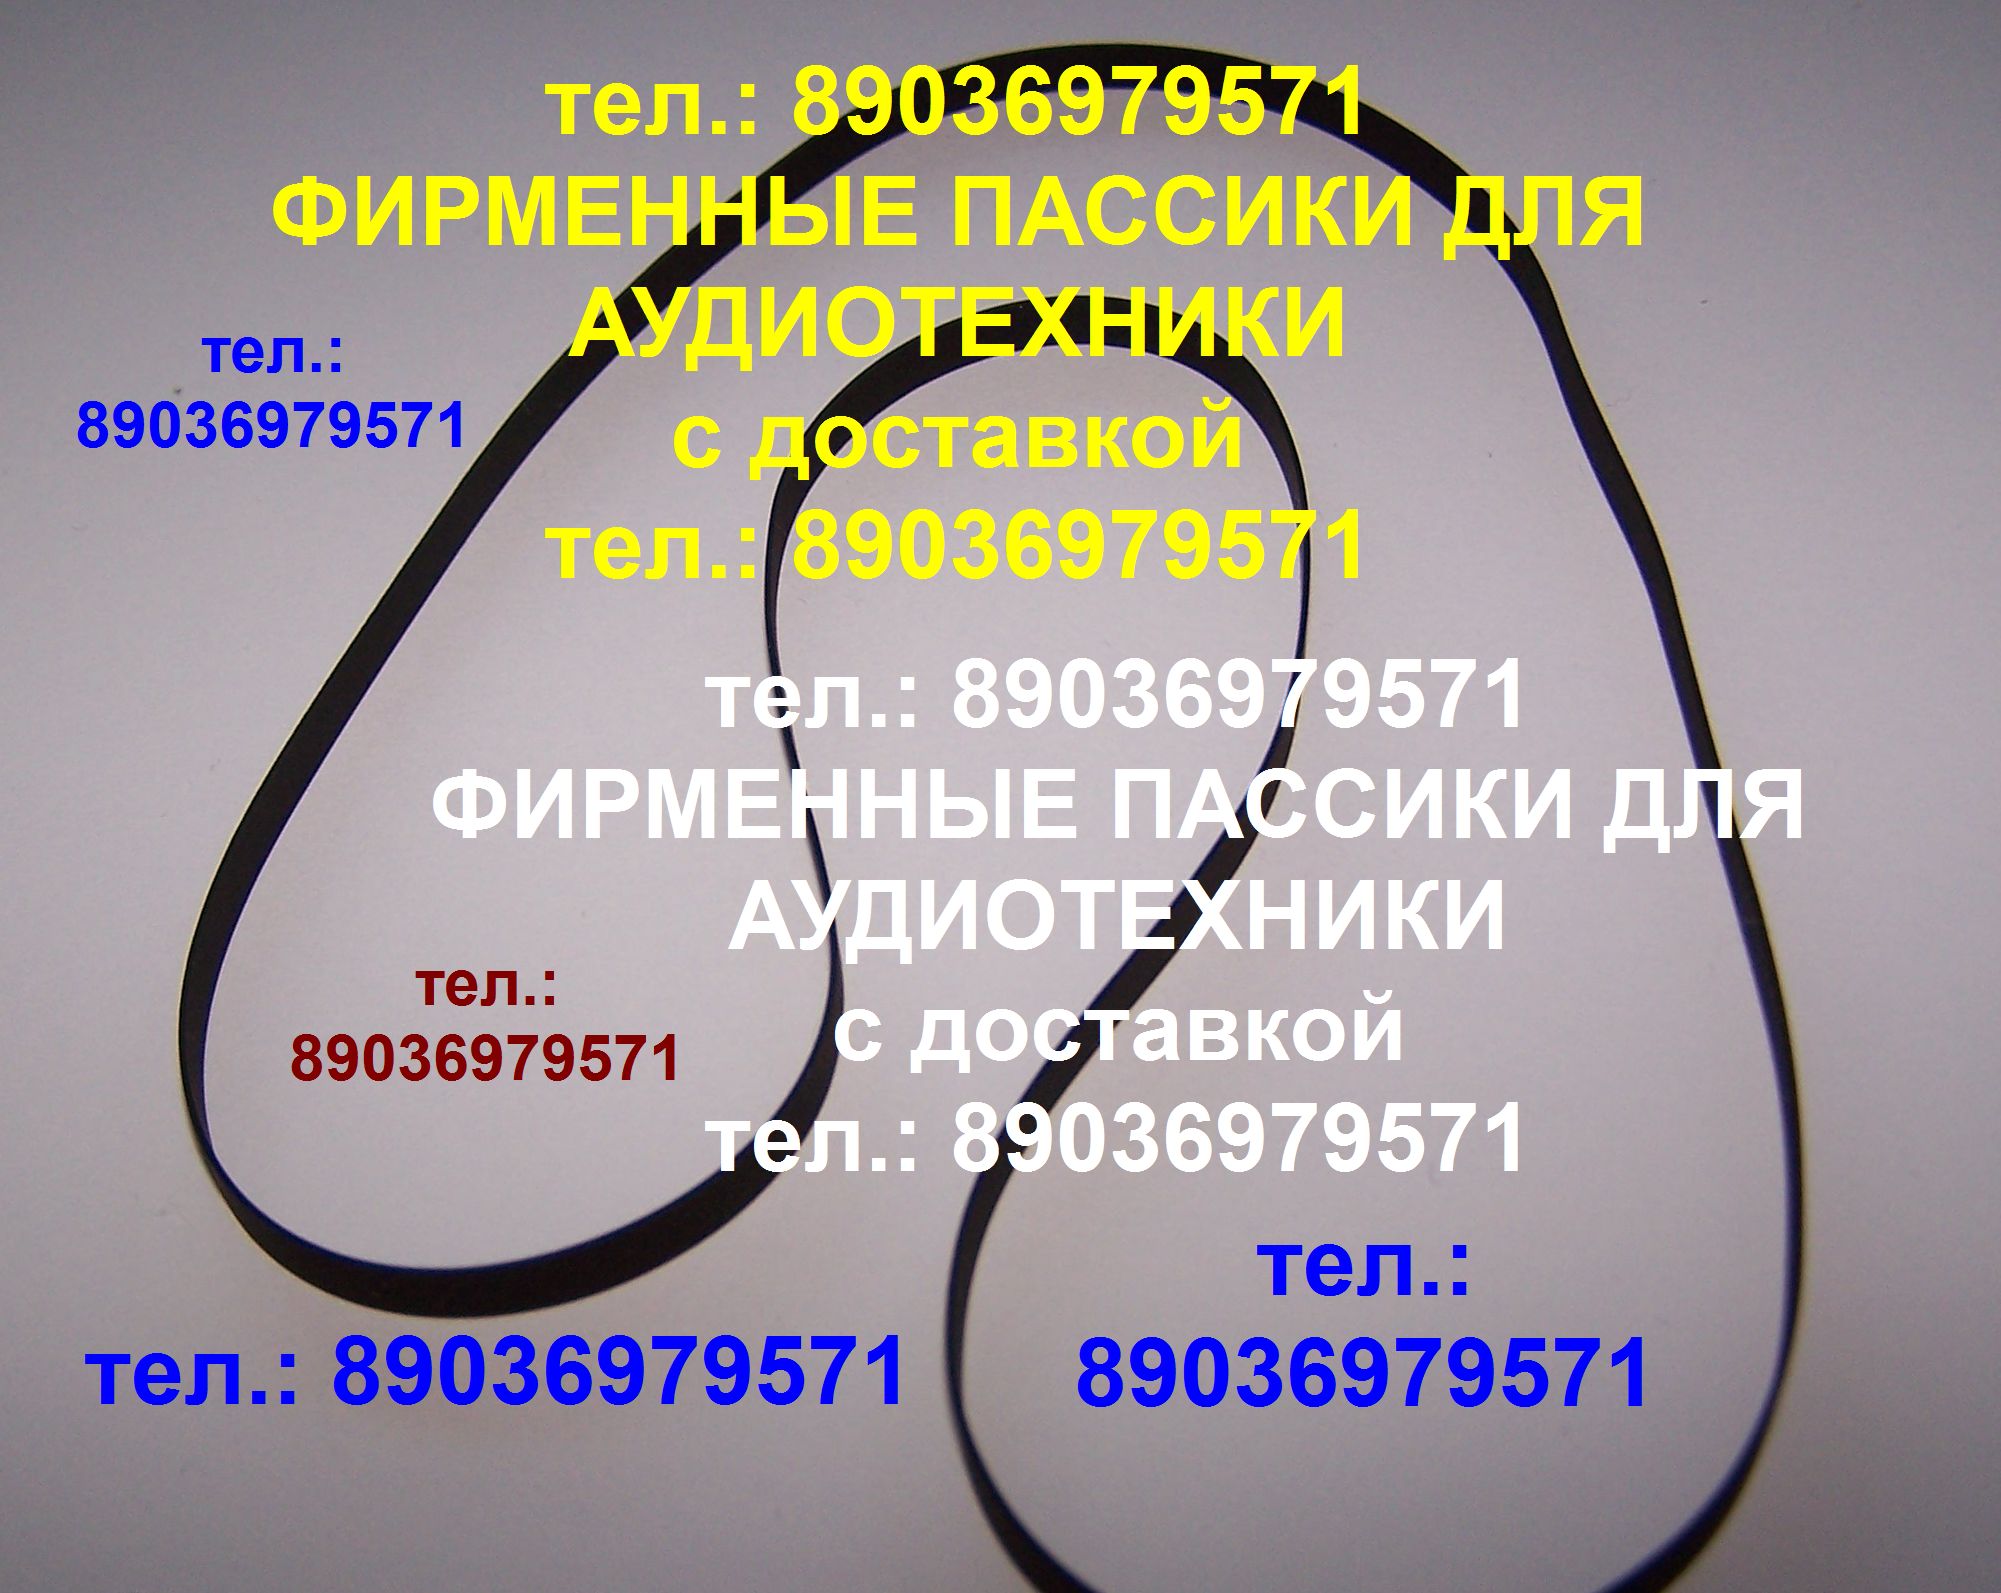 Пассики для Sharp SG-1 RP-23 SG-2 RP-11 RP-25 VZ-3500 RP-10 шарп ремень Пассики для Sharp SG-1 RP-23 SG-2 RP-11 RP-25 VZ-3000 RP-10 шарп ремень в городе Москва, фото 1, Московская область